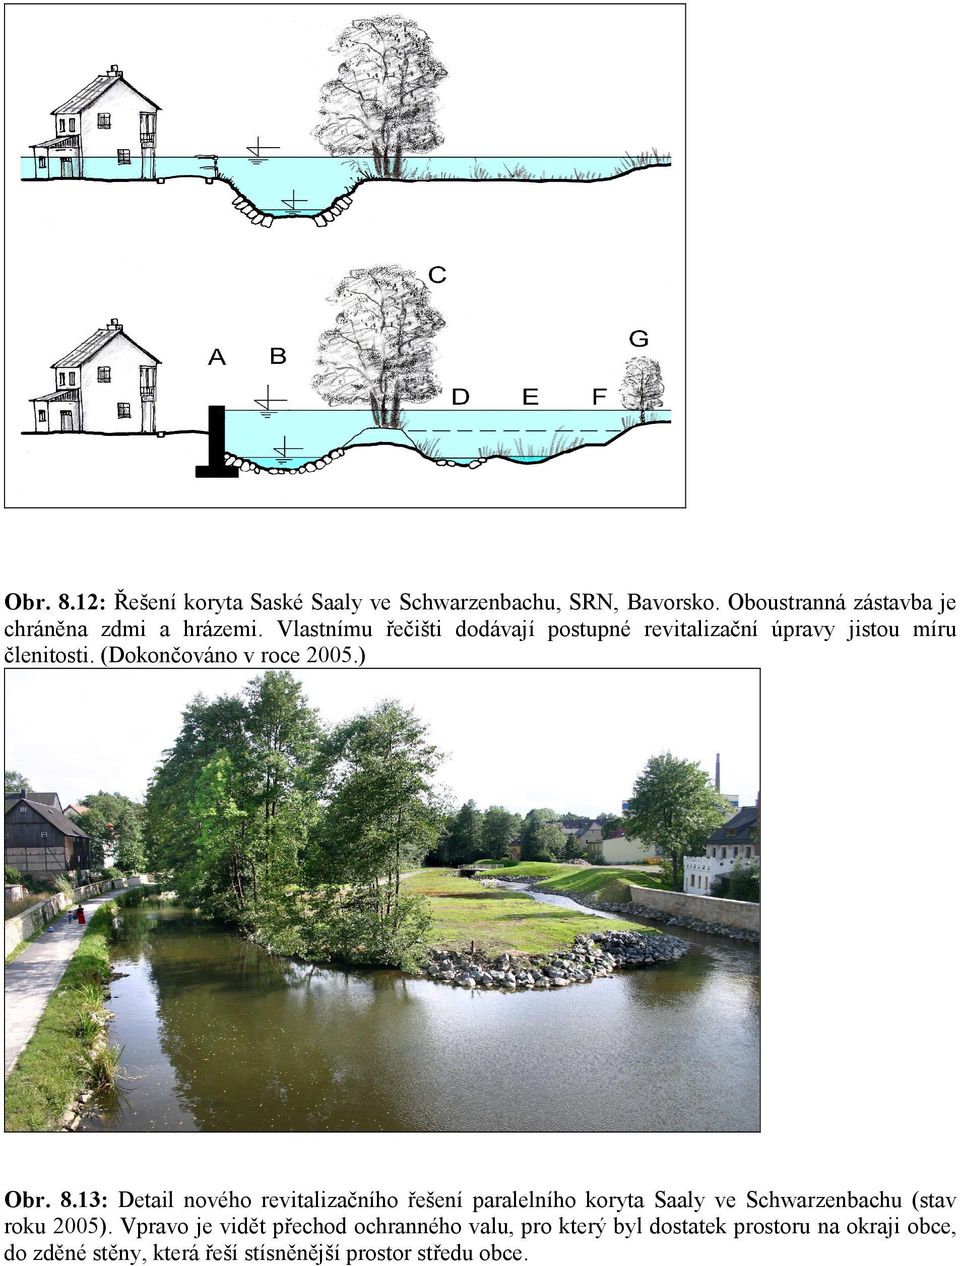 13: Detail nového revitalizačního řešení paralelního koryta Saaly ve Schwarzenbachu (stav roku 2005).